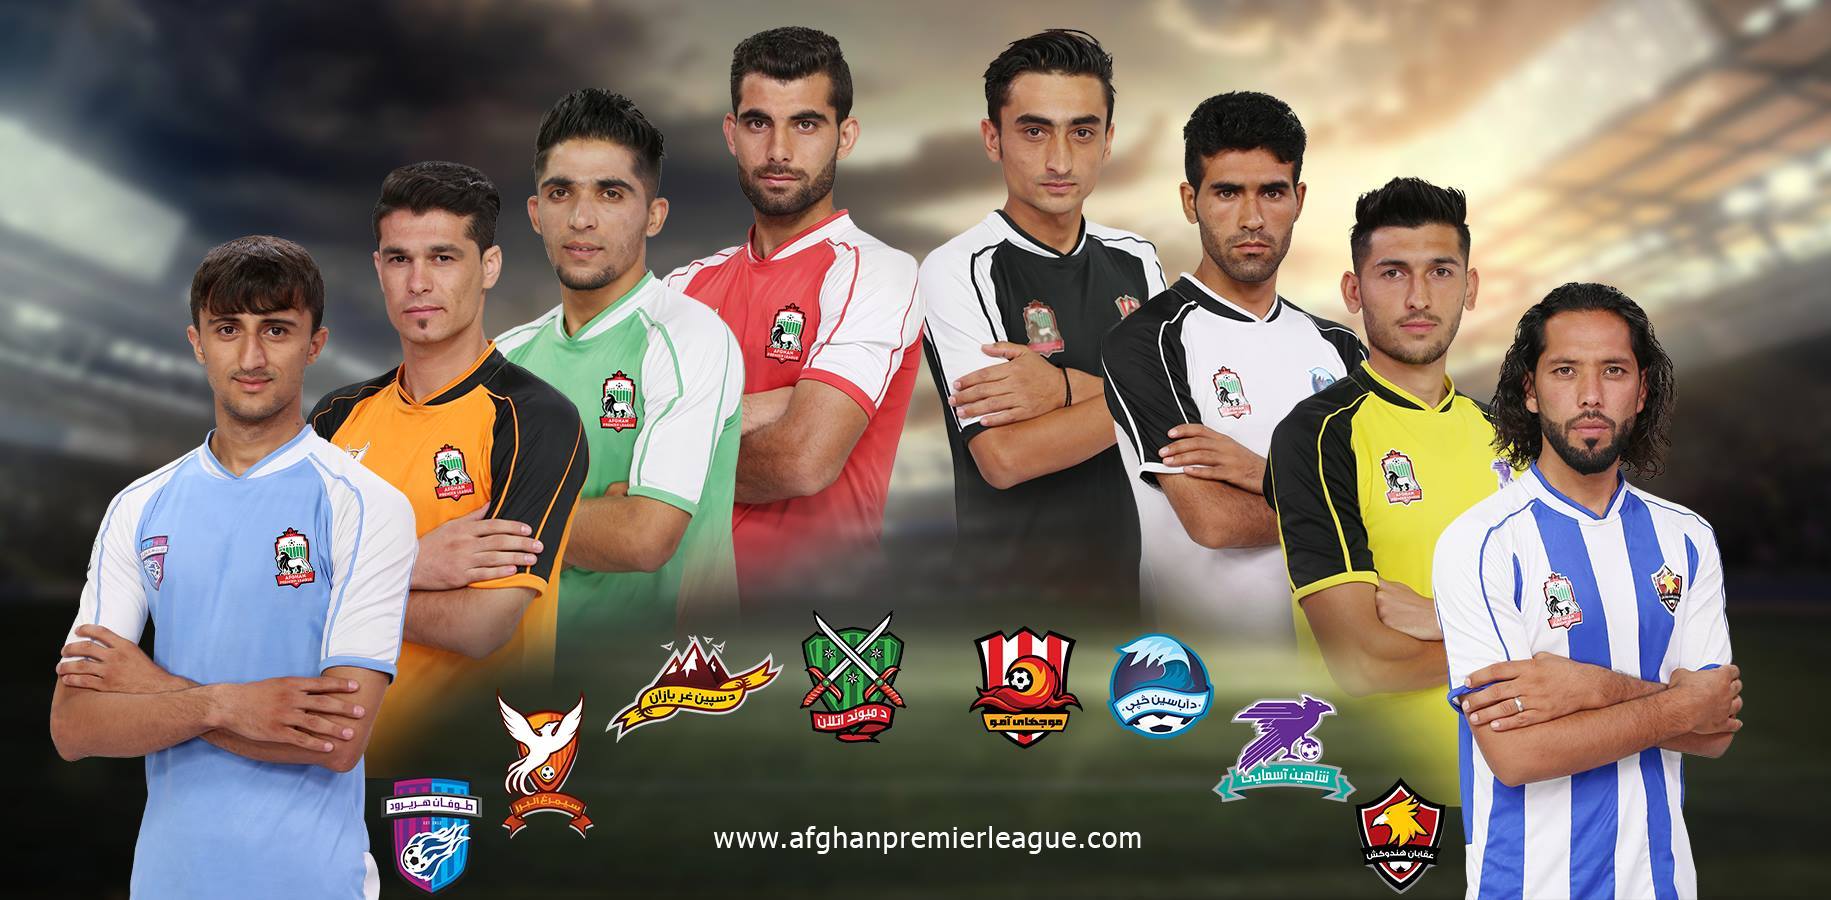 Selección de fútbol de afganistán